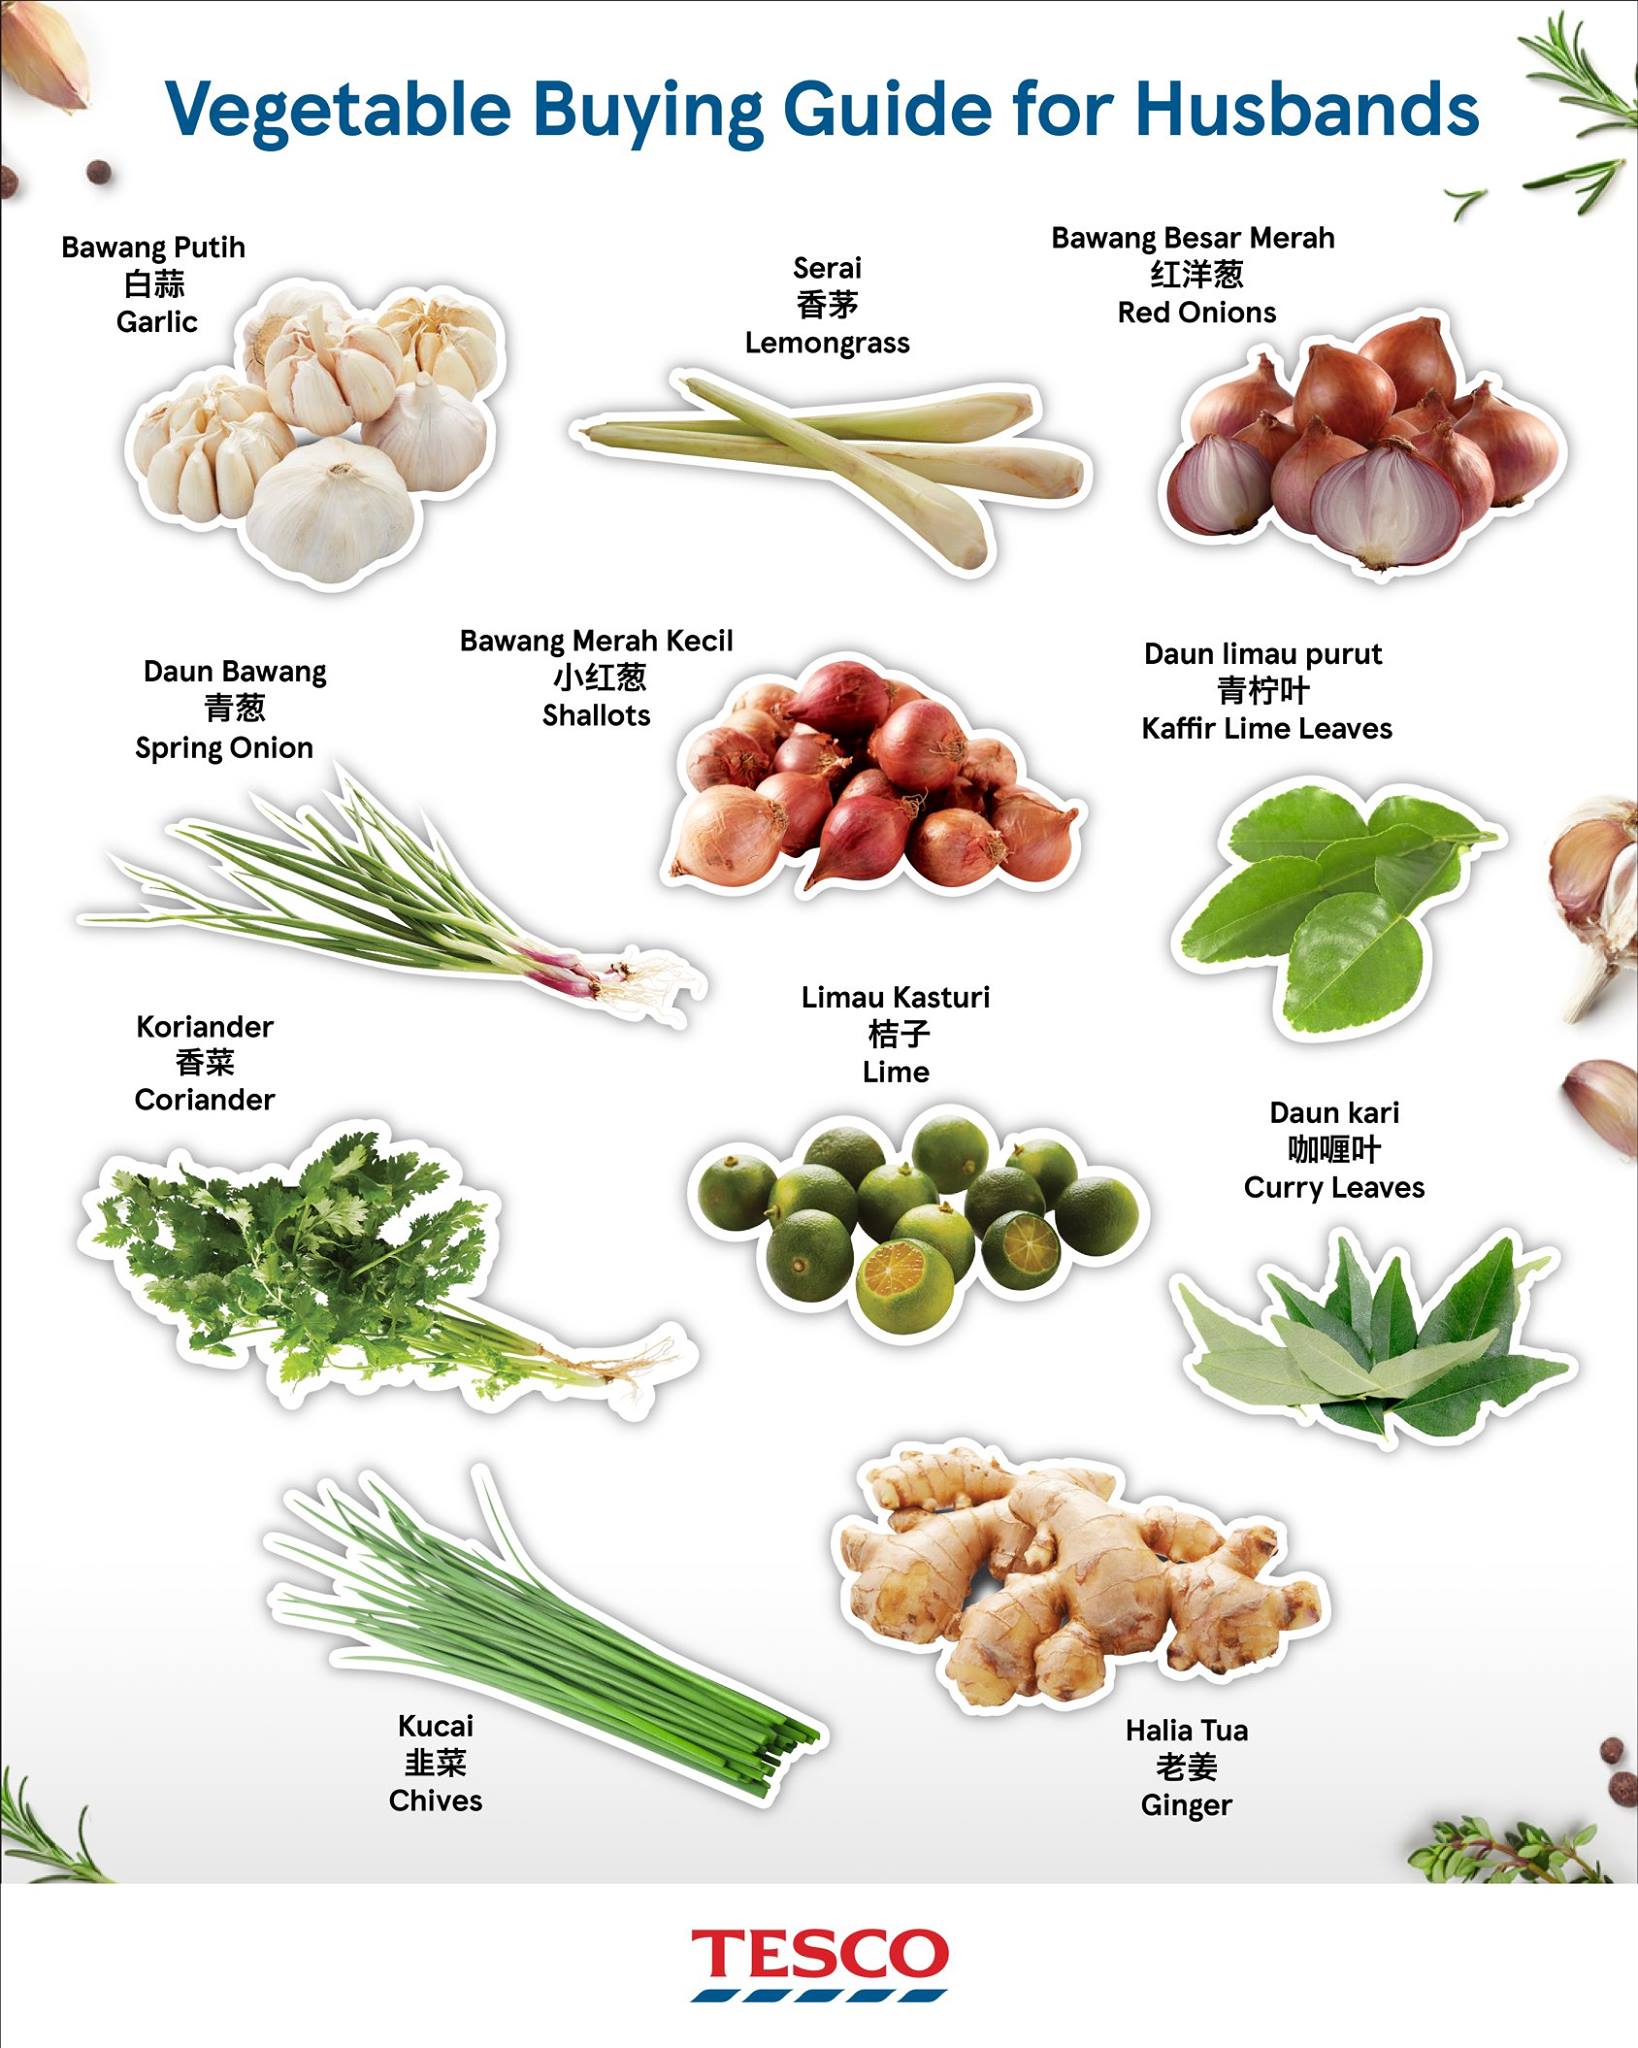 蔬菜种类 图册图片